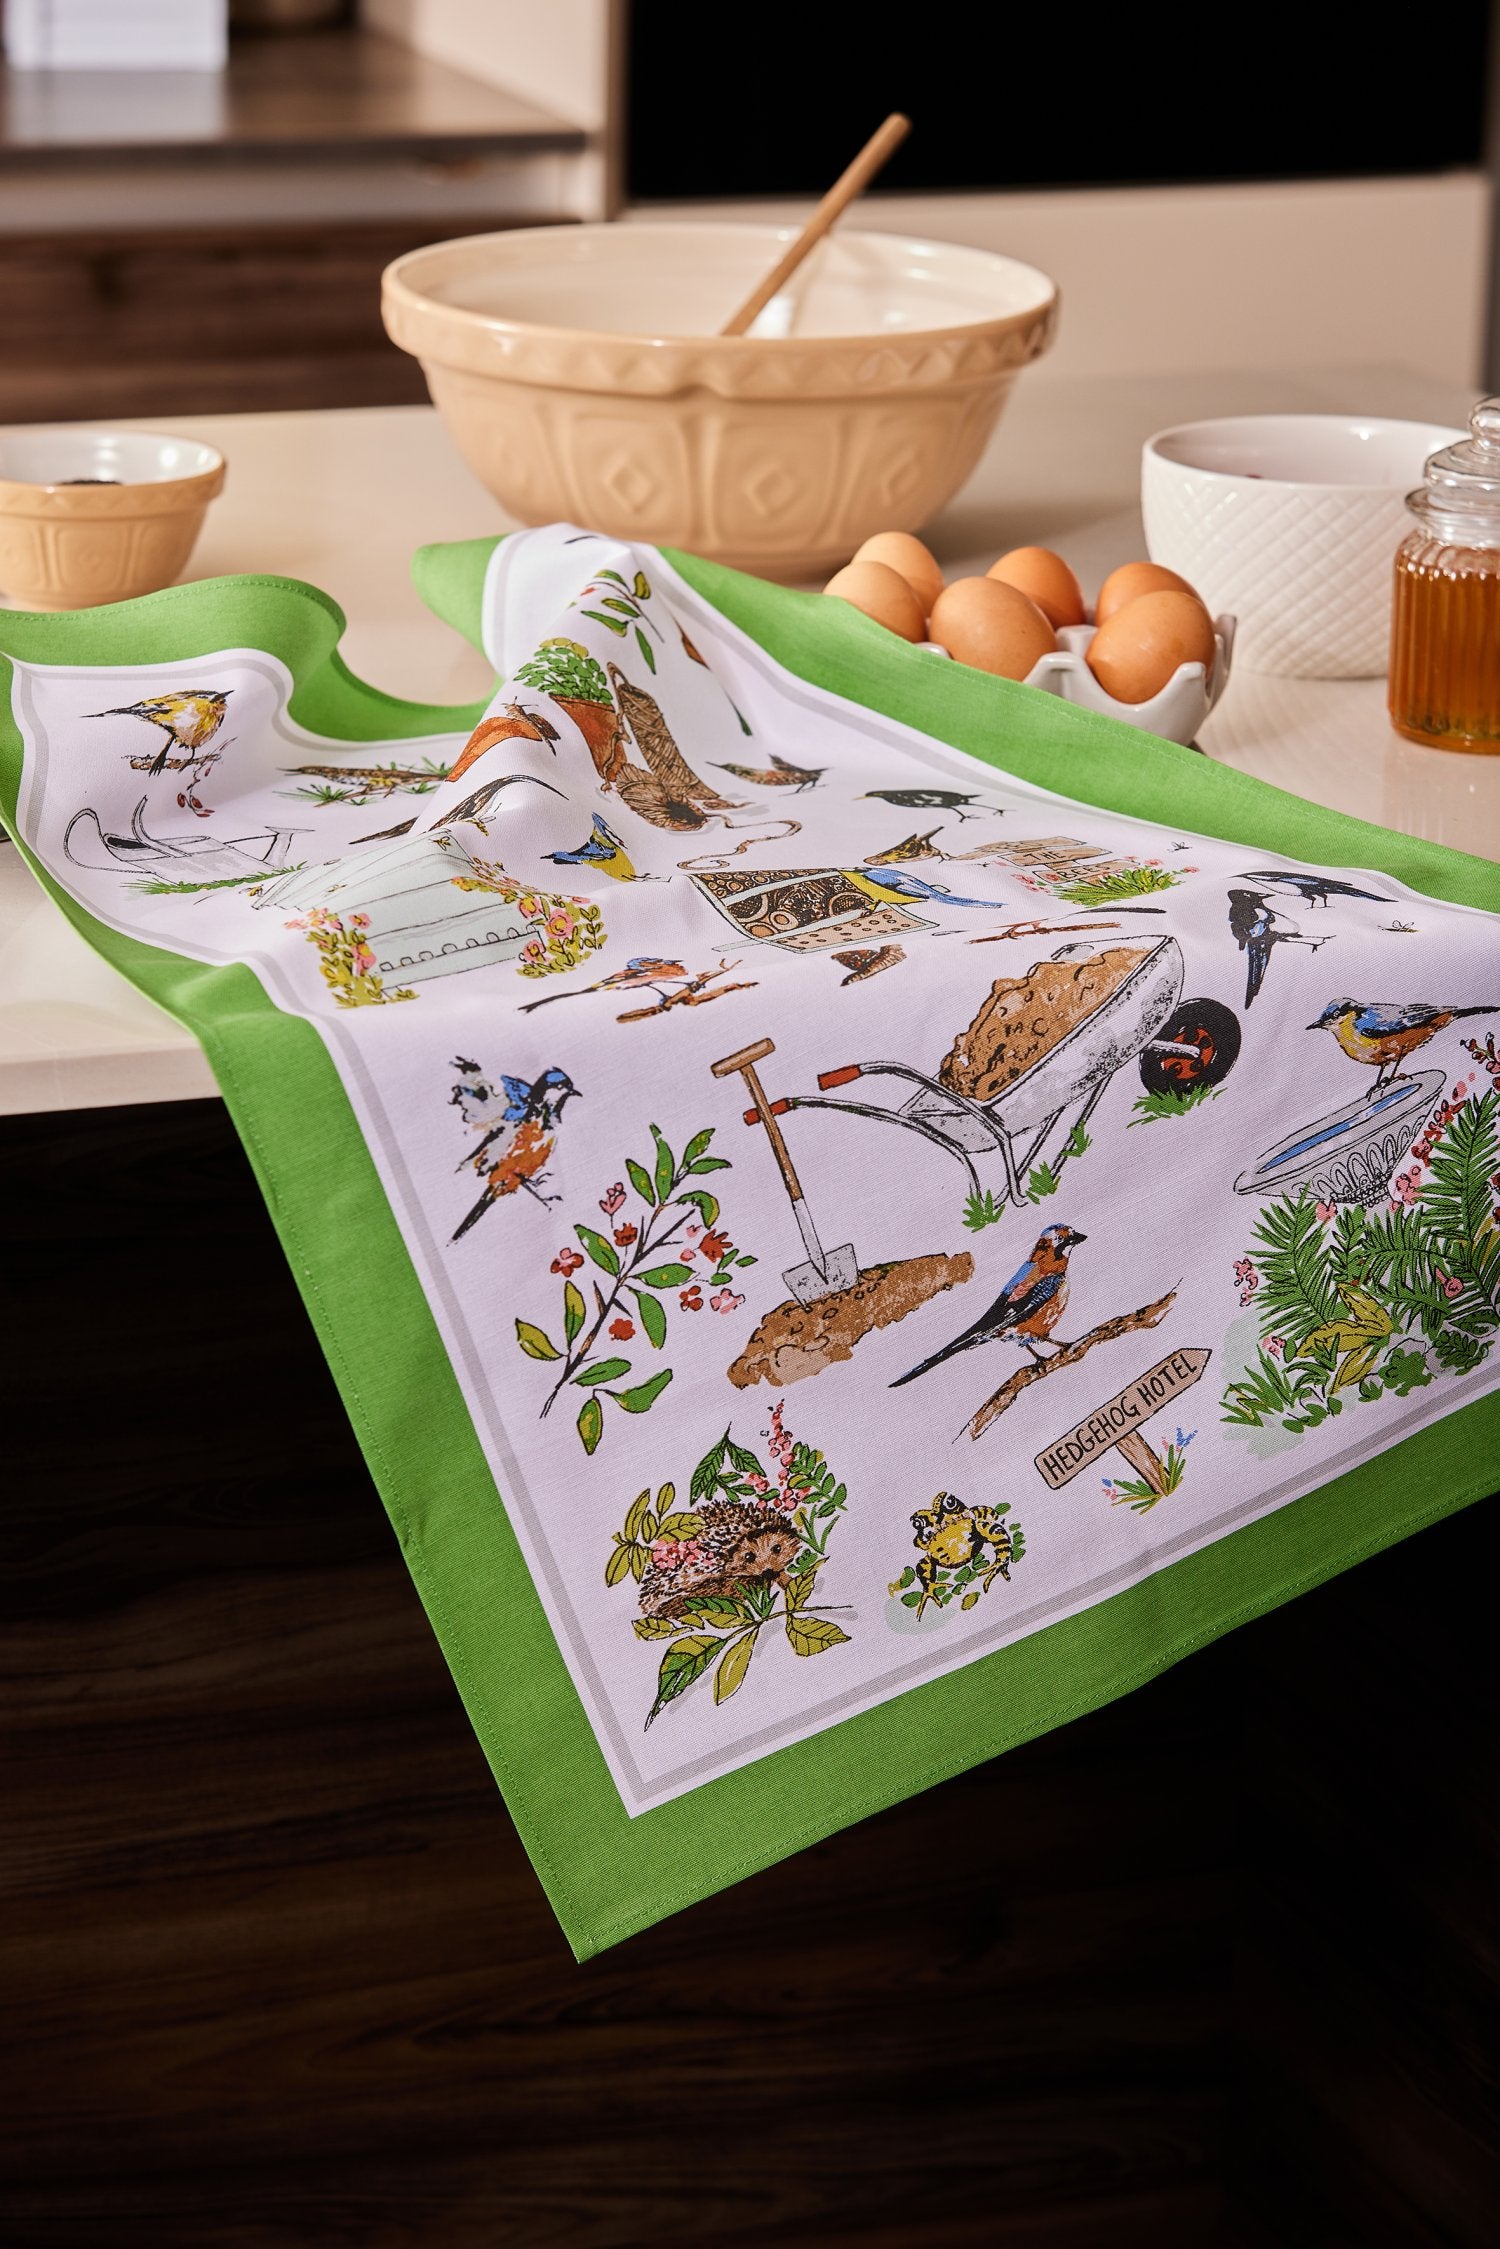 Ulster Weavers, "Garden Birds", Printed cotton tea towel.